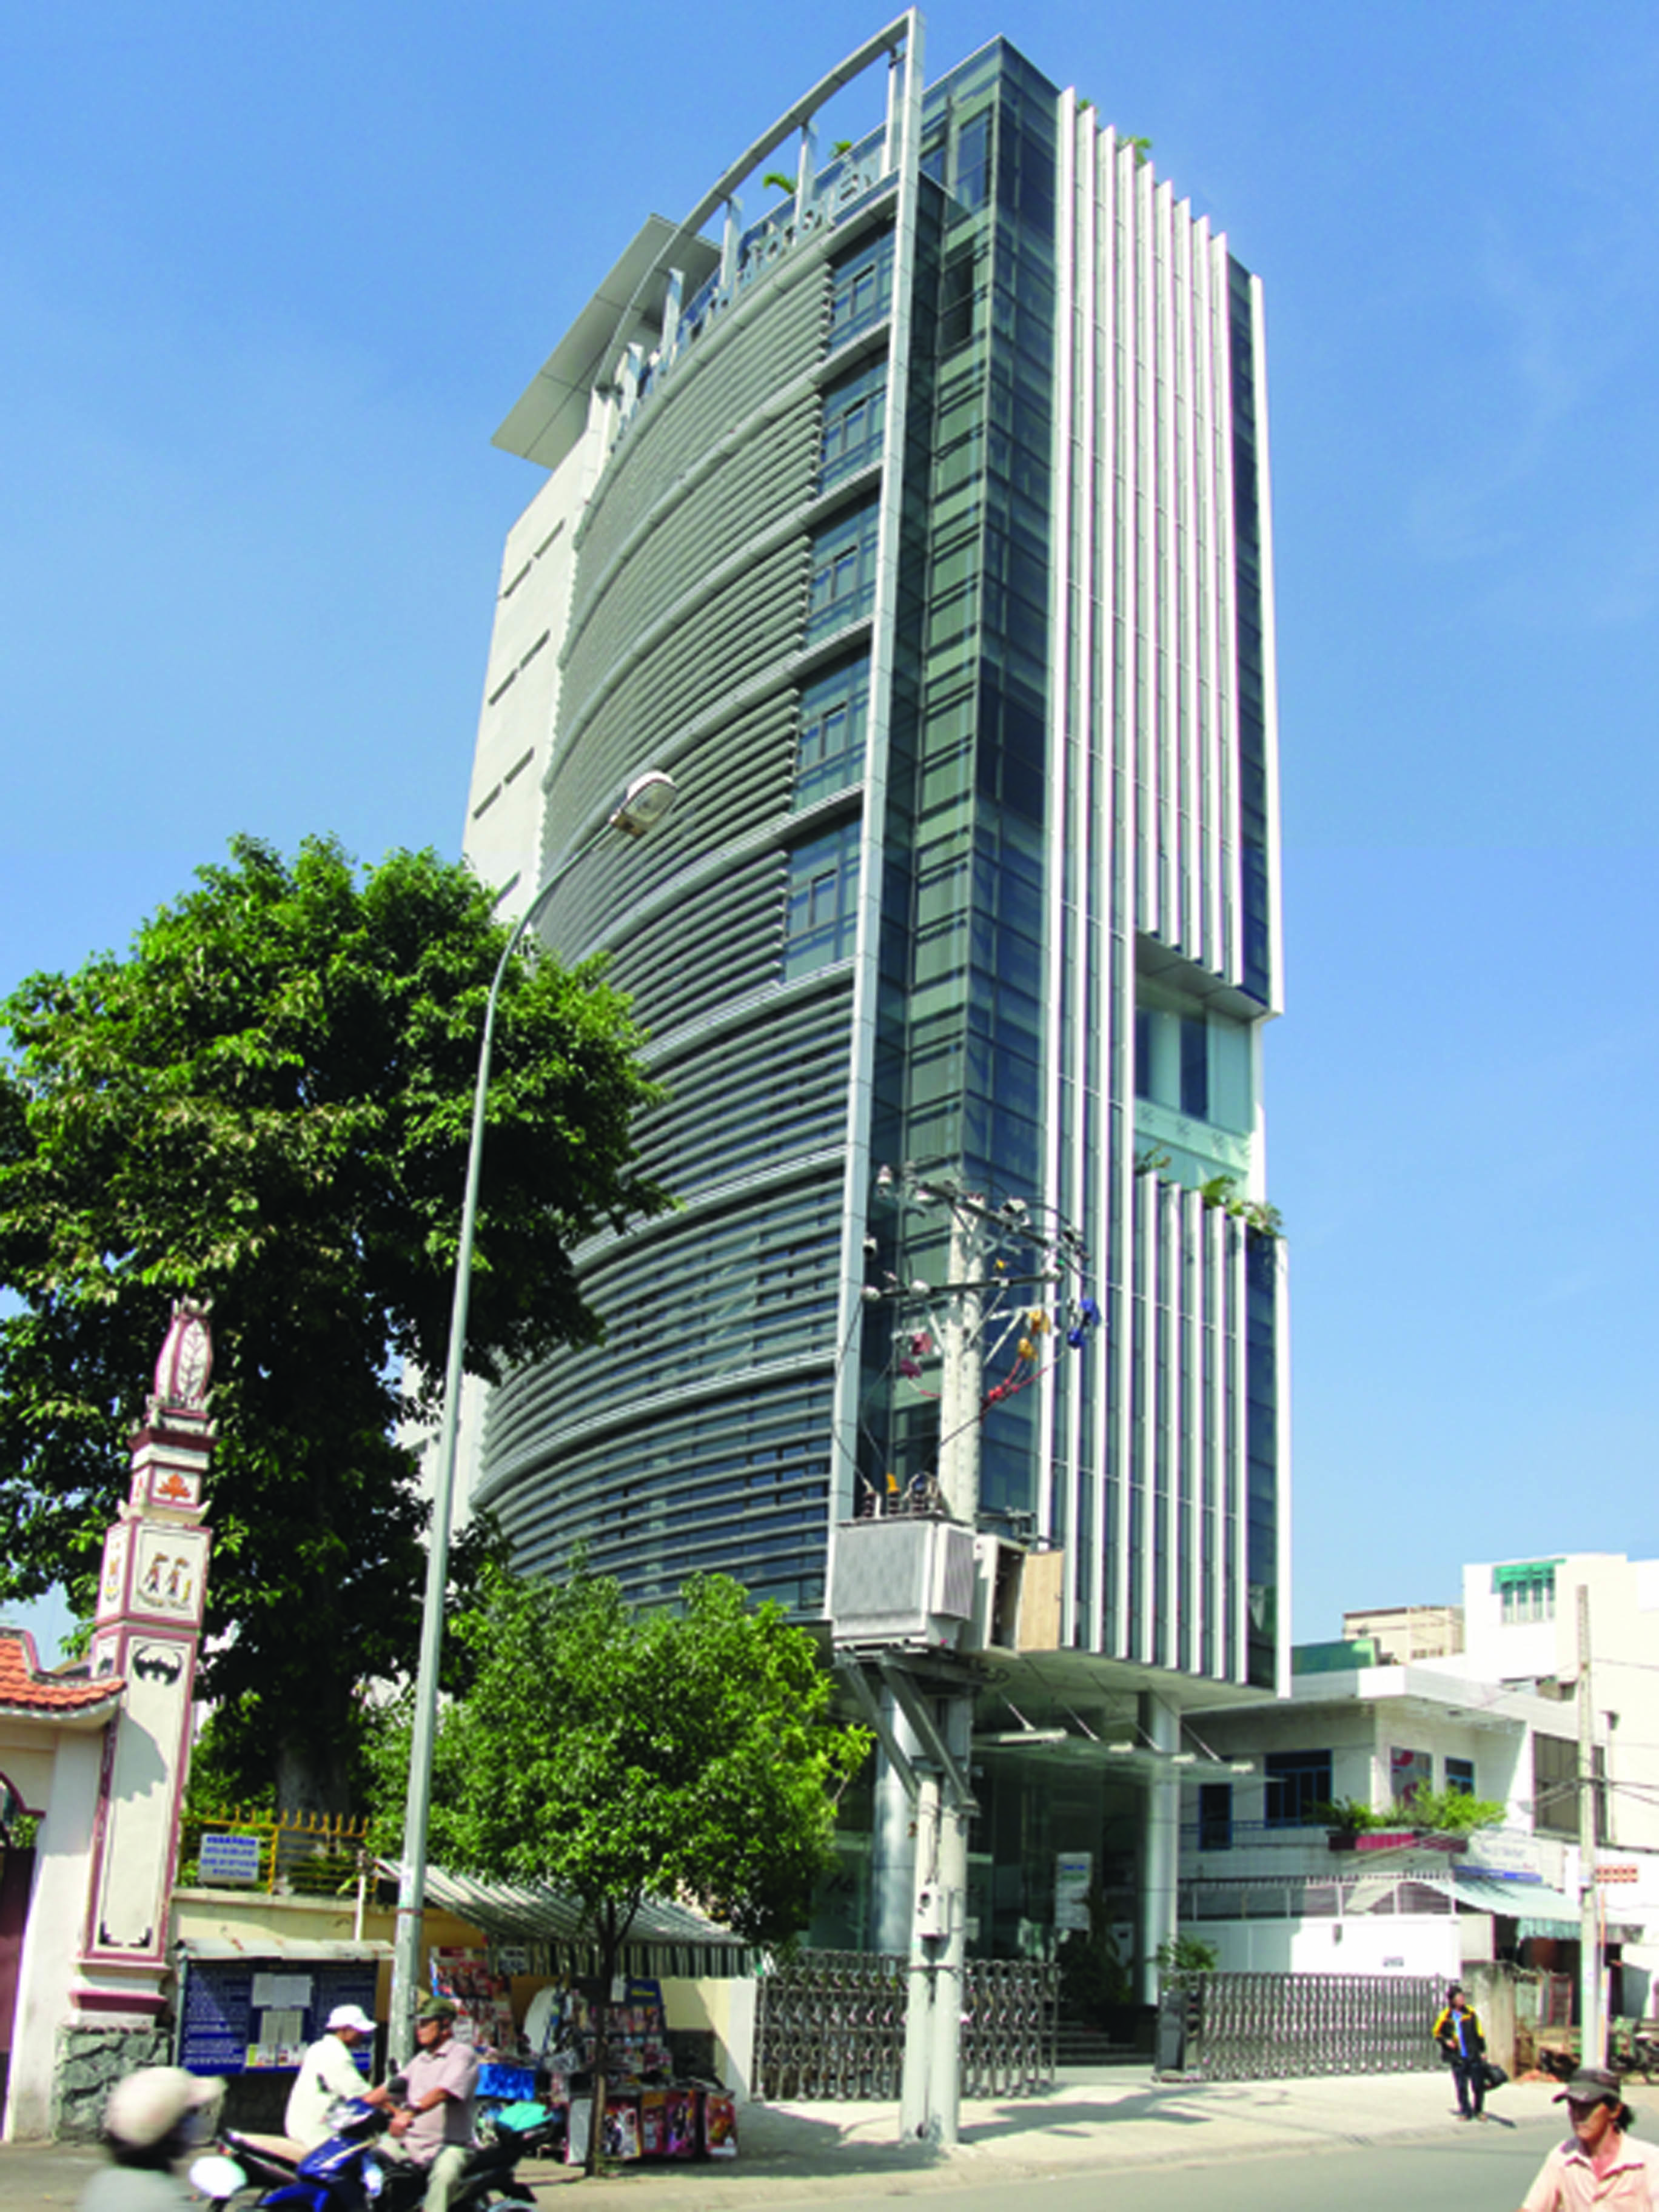 VLOOK.VN - Cho thuê văn phòng Quận Bình Thạnh - THẢO ĐIỀN Building